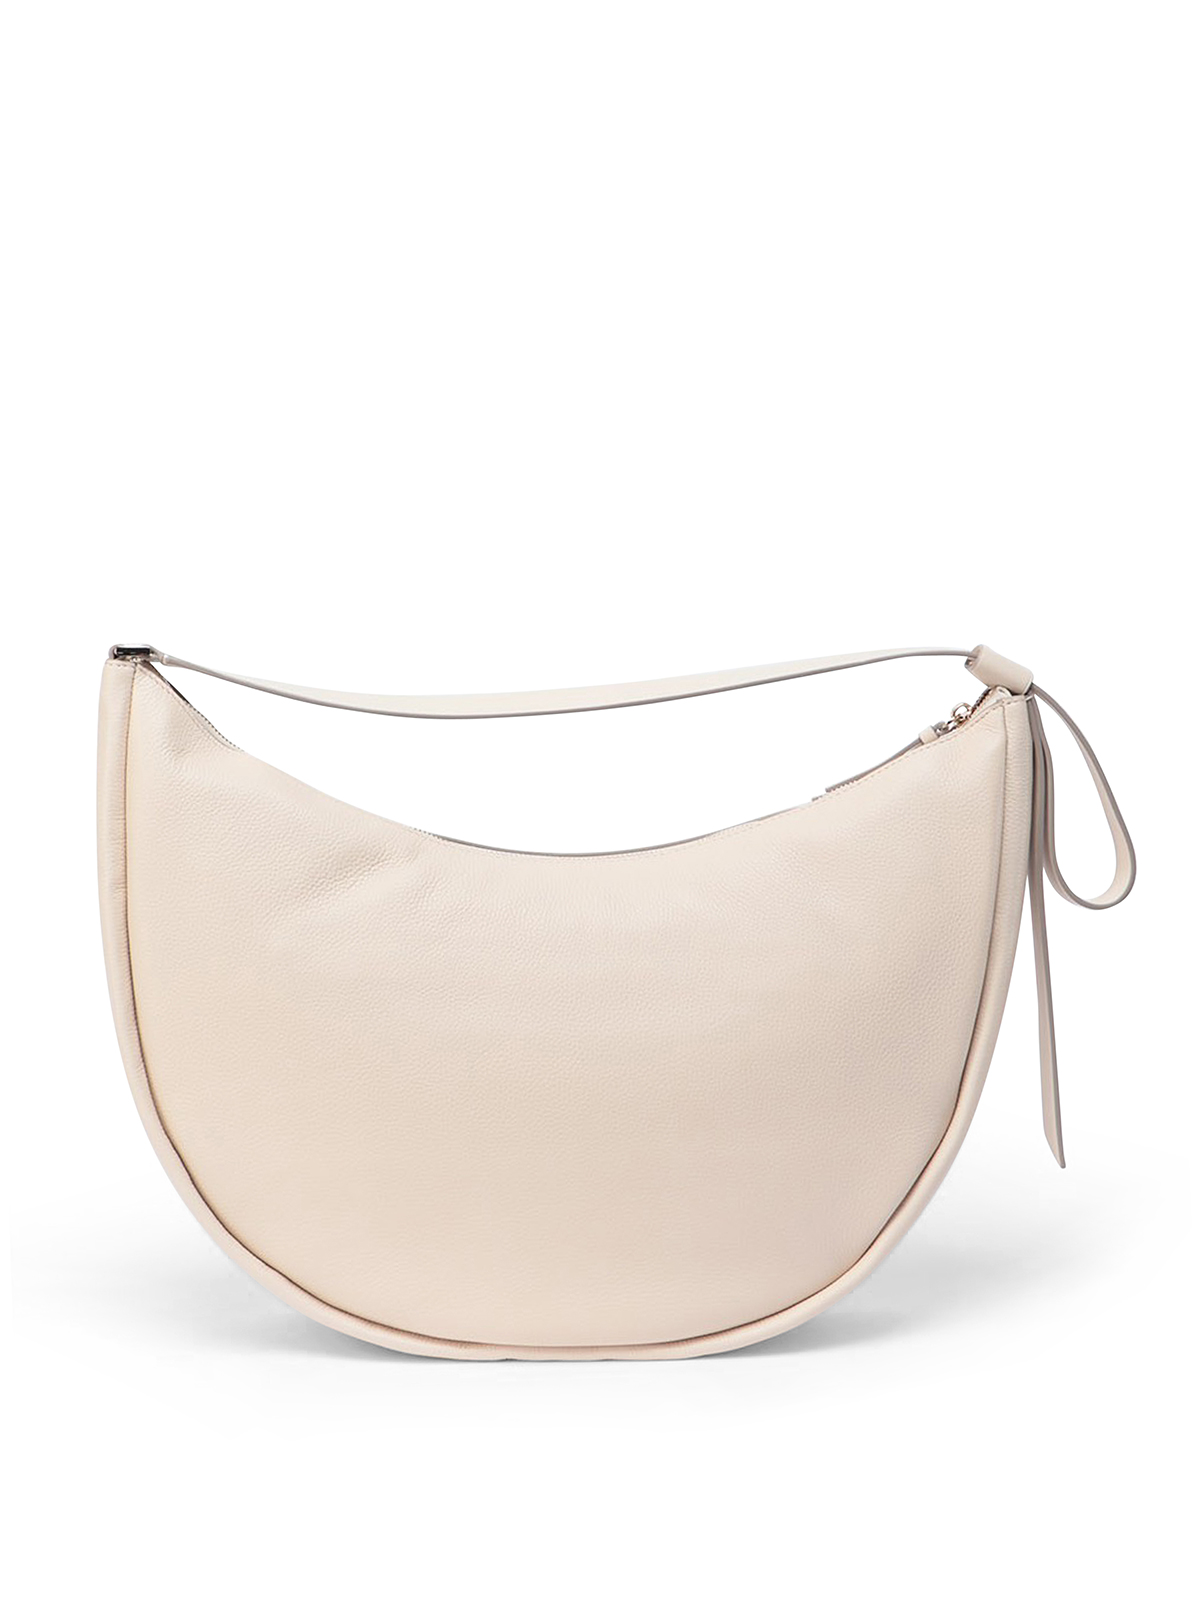 Shoulder bags Kate Spade - Smile bag - K6205Y24650 | Shop online at iKRIX